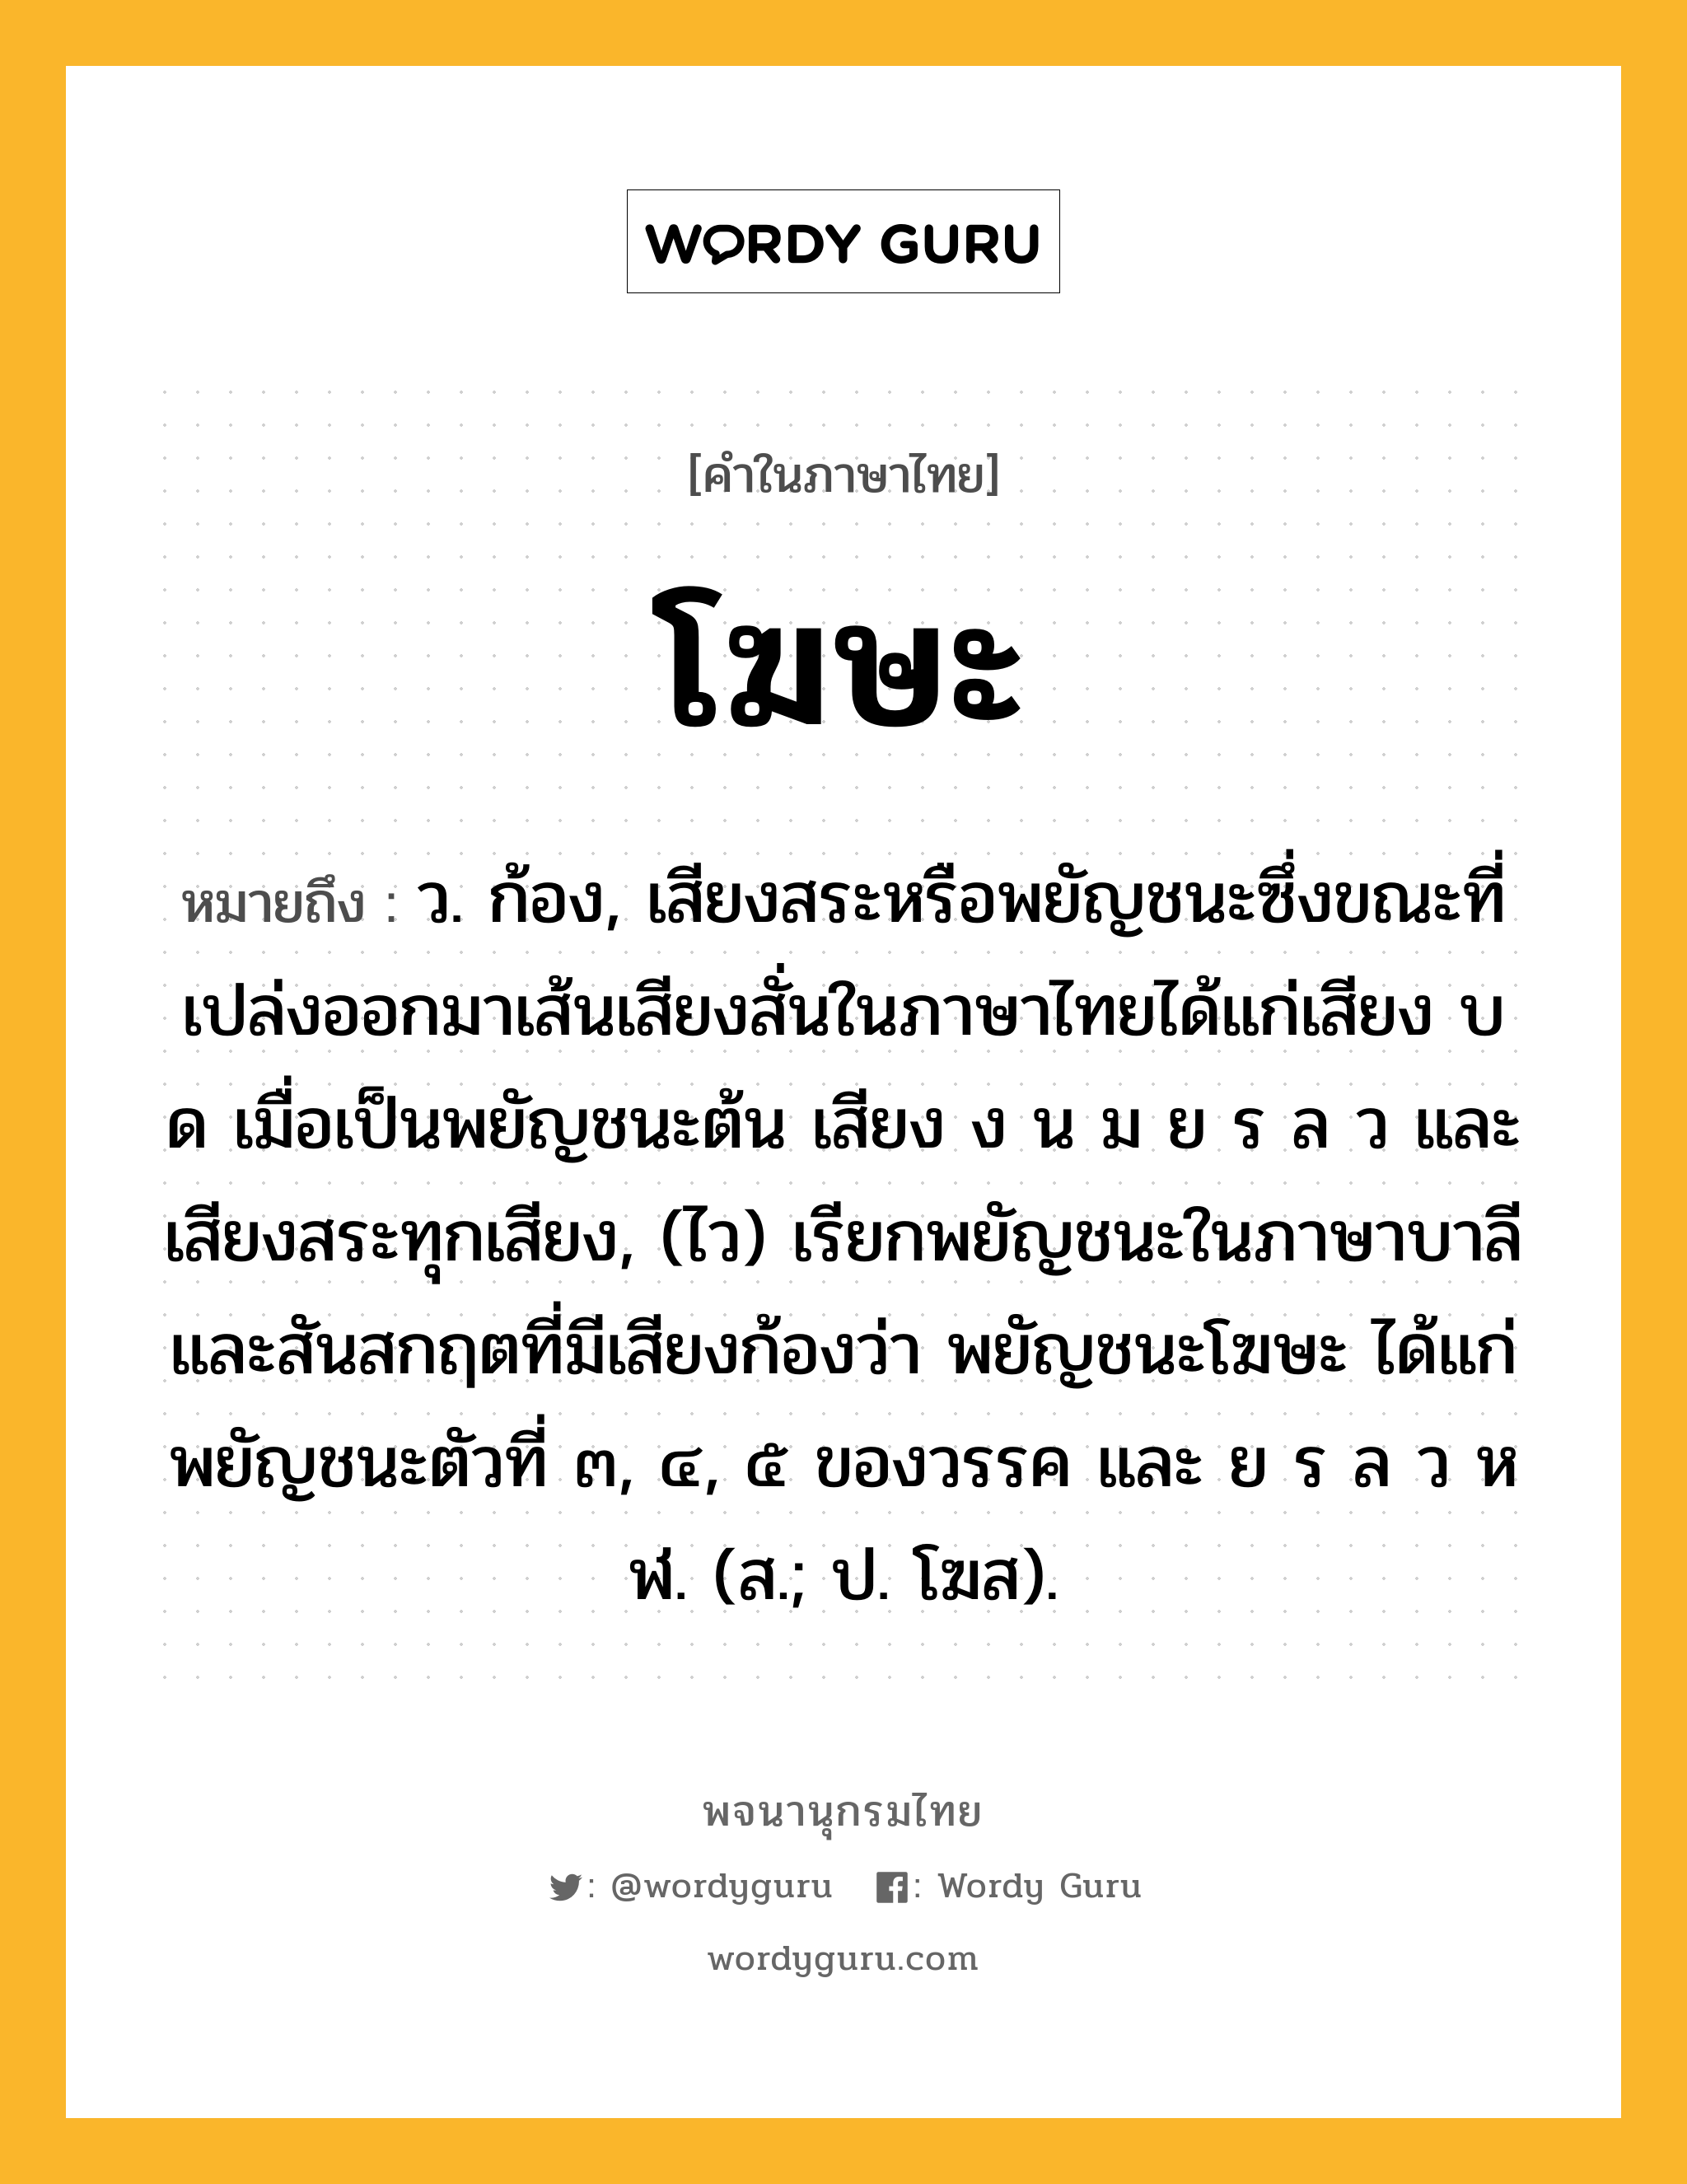 โฆษะ หมายถึงอะไร?, คำในภาษาไทย โฆษะ หมายถึง ว. ก้อง, เสียงสระหรือพยัญชนะซึ่งขณะที่เปล่งออกมาเส้นเสียงสั่นในภาษาไทยได้แก่เสียง บ ด เมื่อเป็นพยัญชนะต้น เสียง ง น ม ย ร ล ว และเสียงสระทุกเสียง, (ไว) เรียกพยัญชนะในภาษาบาลีและสันสกฤตที่มีเสียงก้องว่า พยัญชนะโฆษะ ได้แก่ พยัญชนะตัวที่ ๓, ๔, ๕ ของวรรค และ ย ร ล ว ห ฬ. (ส.; ป. โฆส).